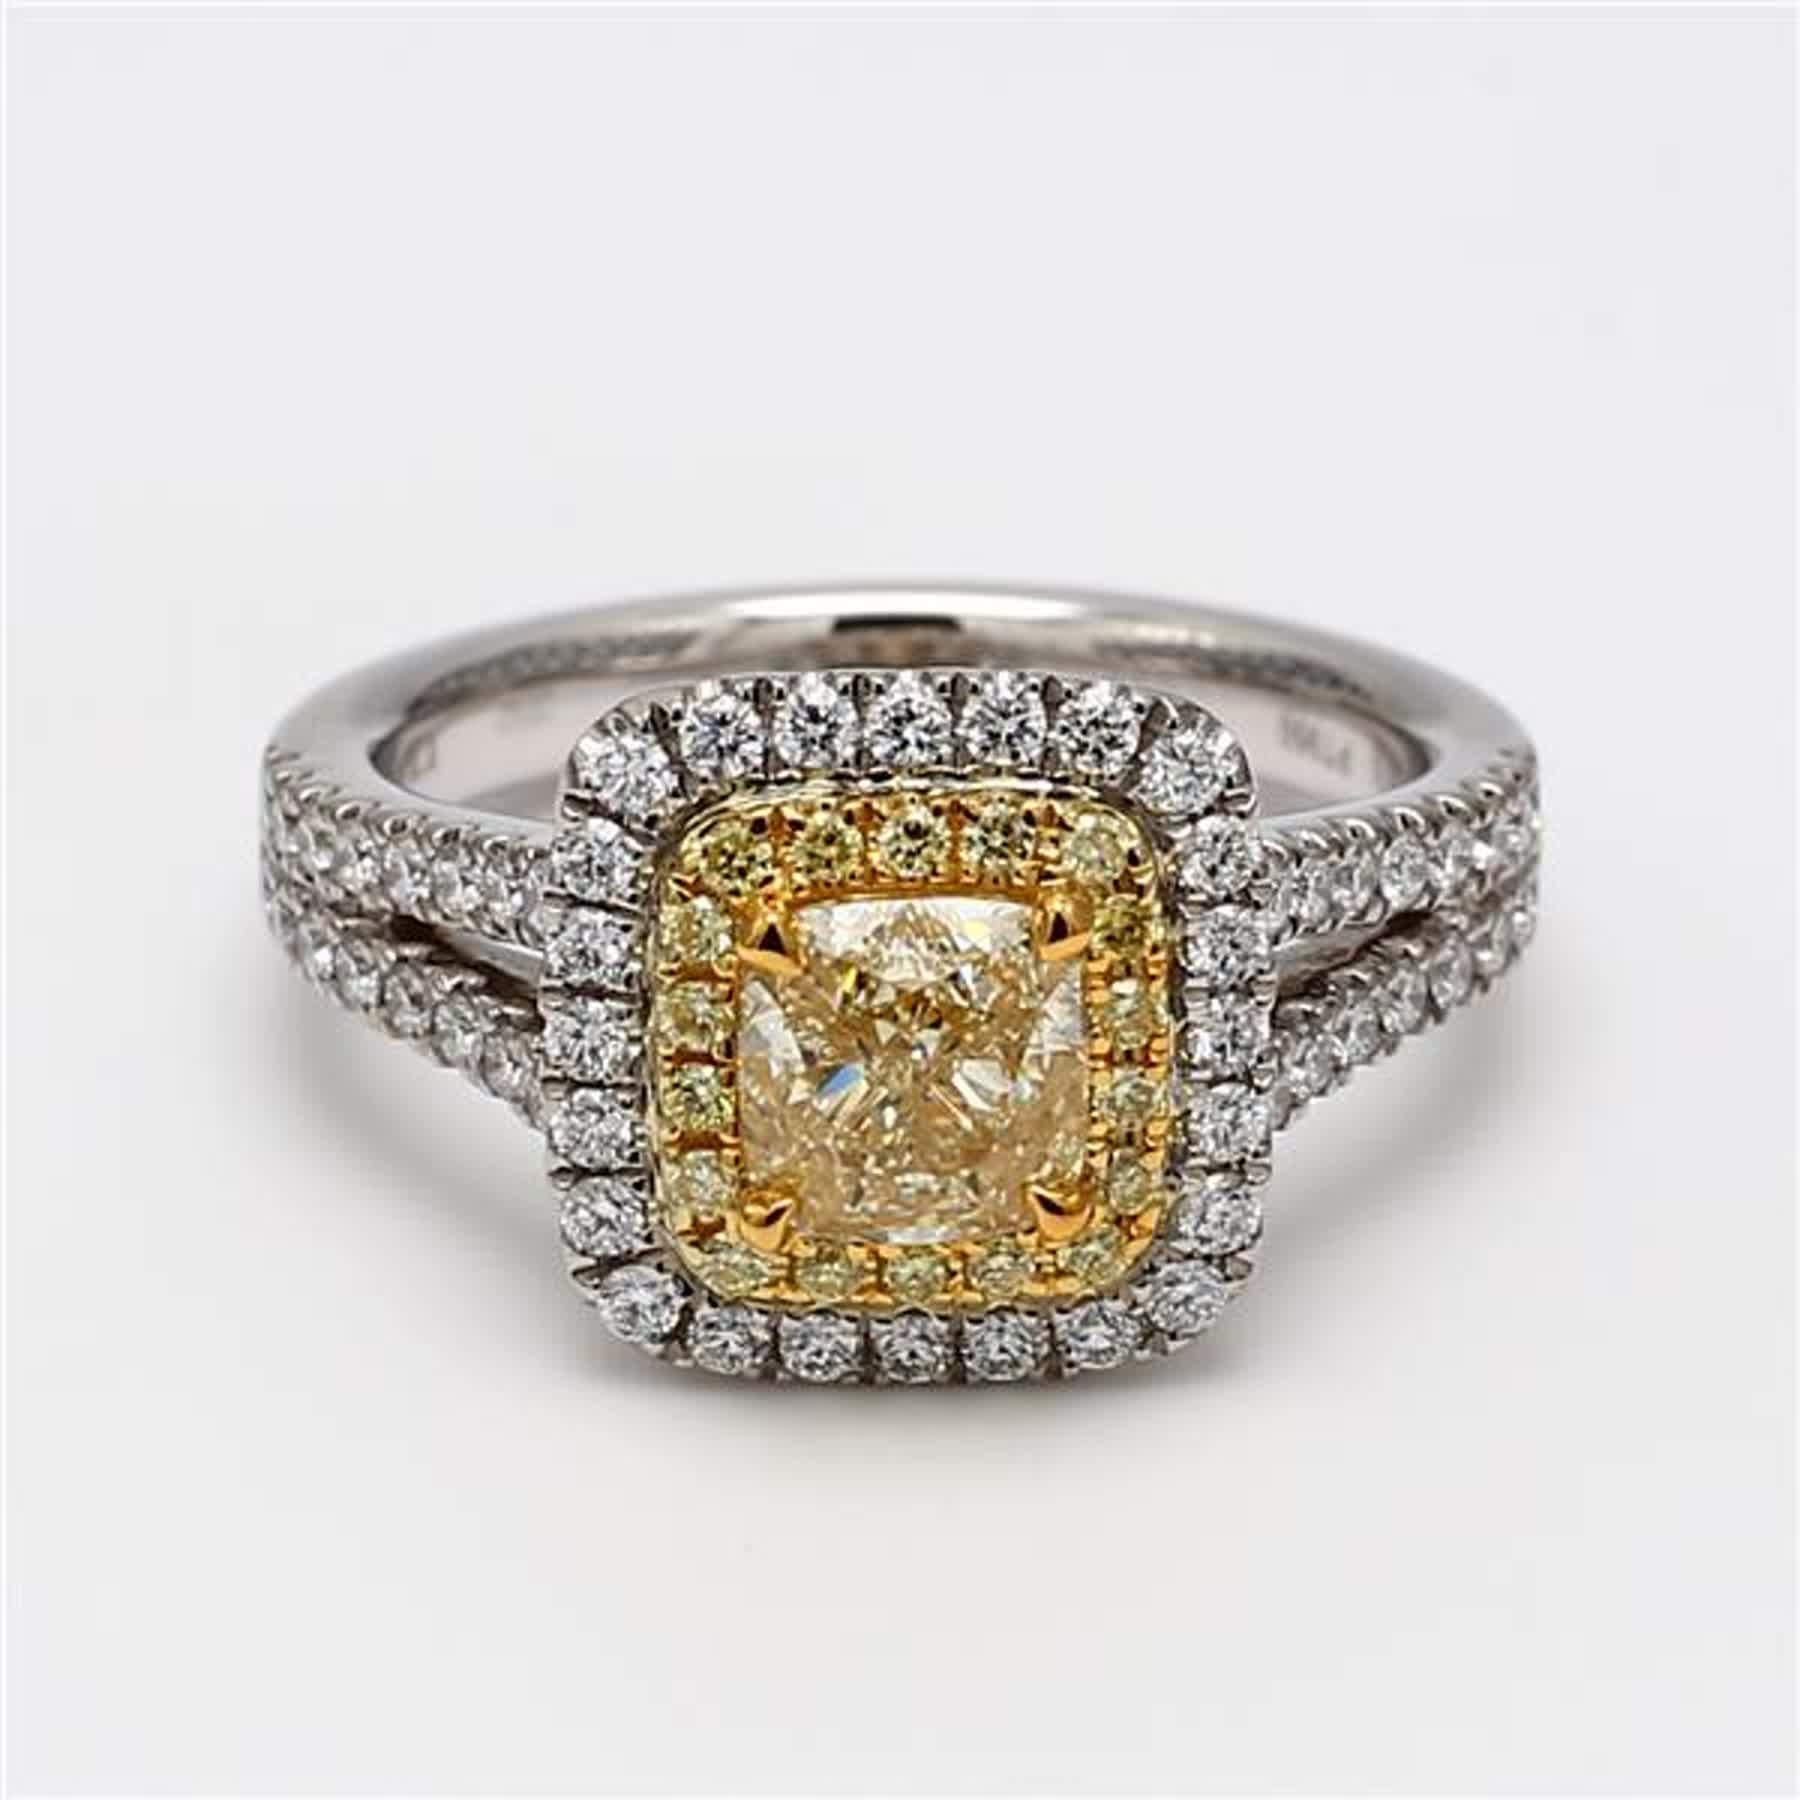 Der klassische GIA-zertifizierte Diamantring von RareGemWorld. Montiert in einer wunderschönen Fassung aus 18 Karat Gelb- und Weißgold und Platin mit einem gelben Diamanten im Kissenschliff. Der gelbe Diamant ist umgeben von runden natürlichen